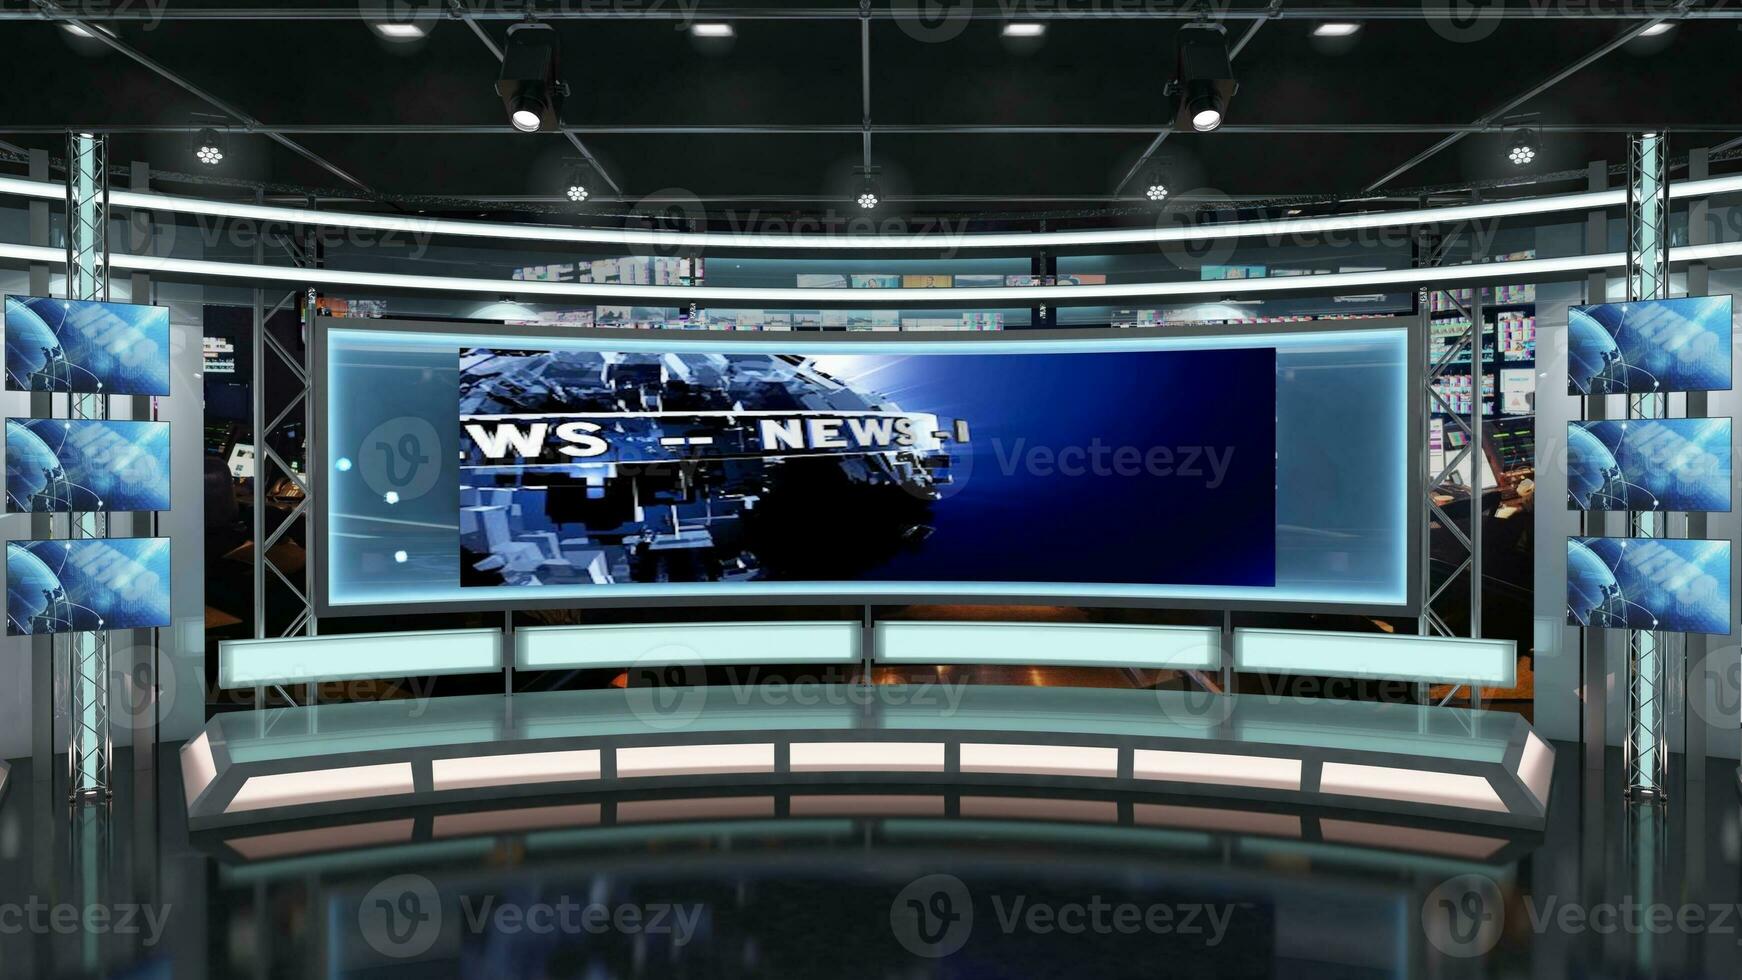 virtuell Fernseher Studio Satz. Grün Bildschirm Hintergrund. 3d Rendern foto